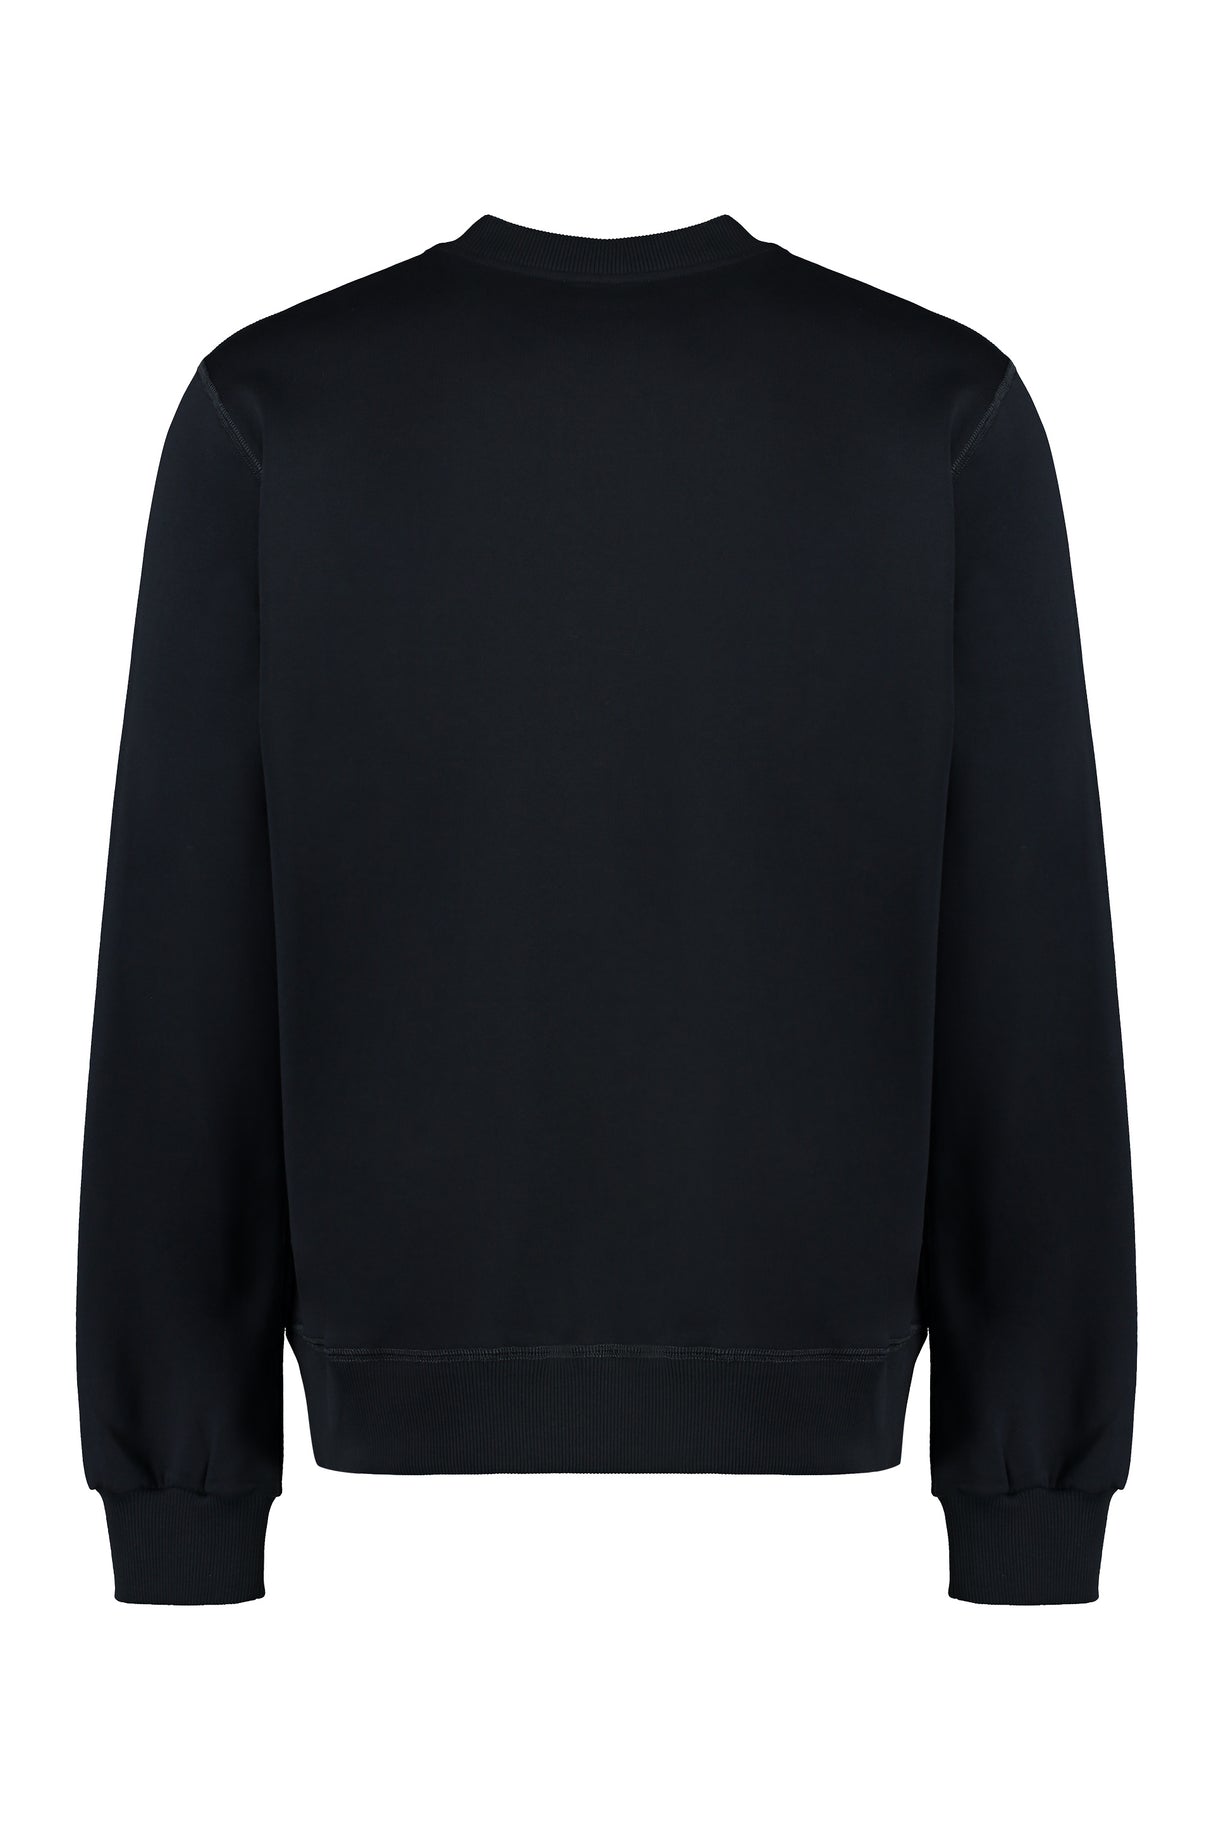 Áo sweatshirt cổ tròn vải cotton màu xanh dành cho nam